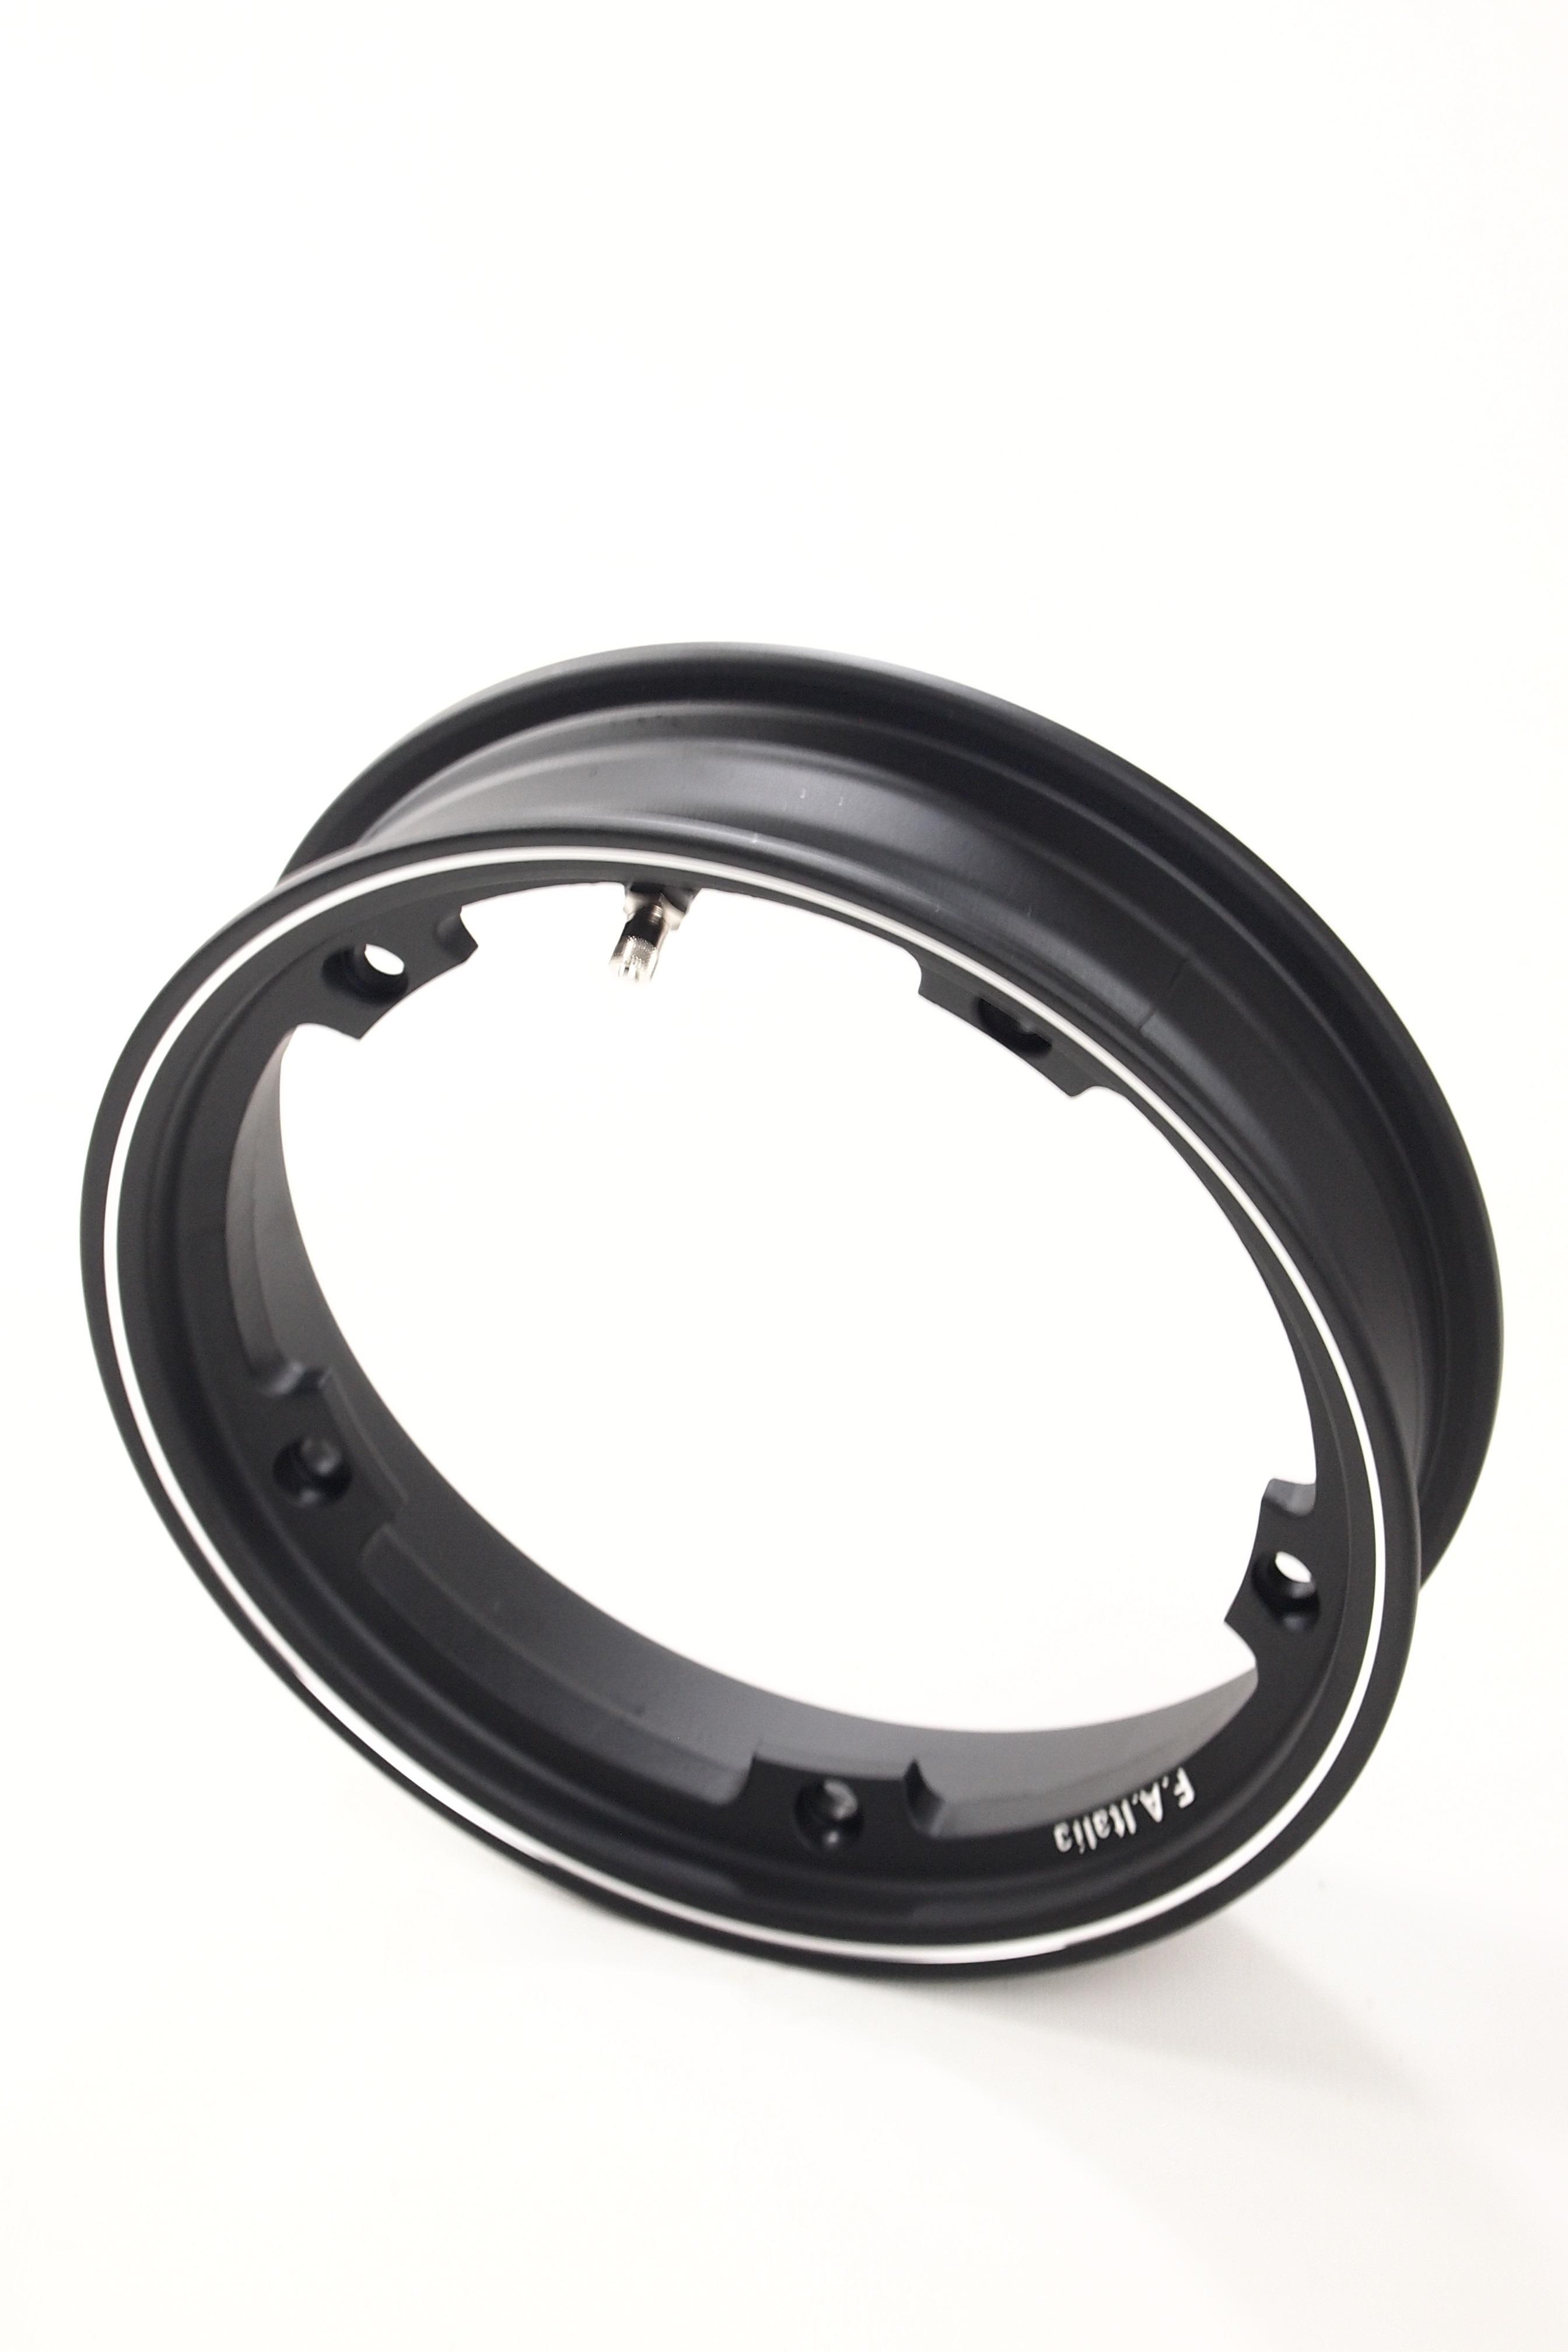 Cercle tubeless en alliage de canal 2.10x10 "noir pour Vespa PX - 50 - Primavera - ET3 (avec valve et écrous)